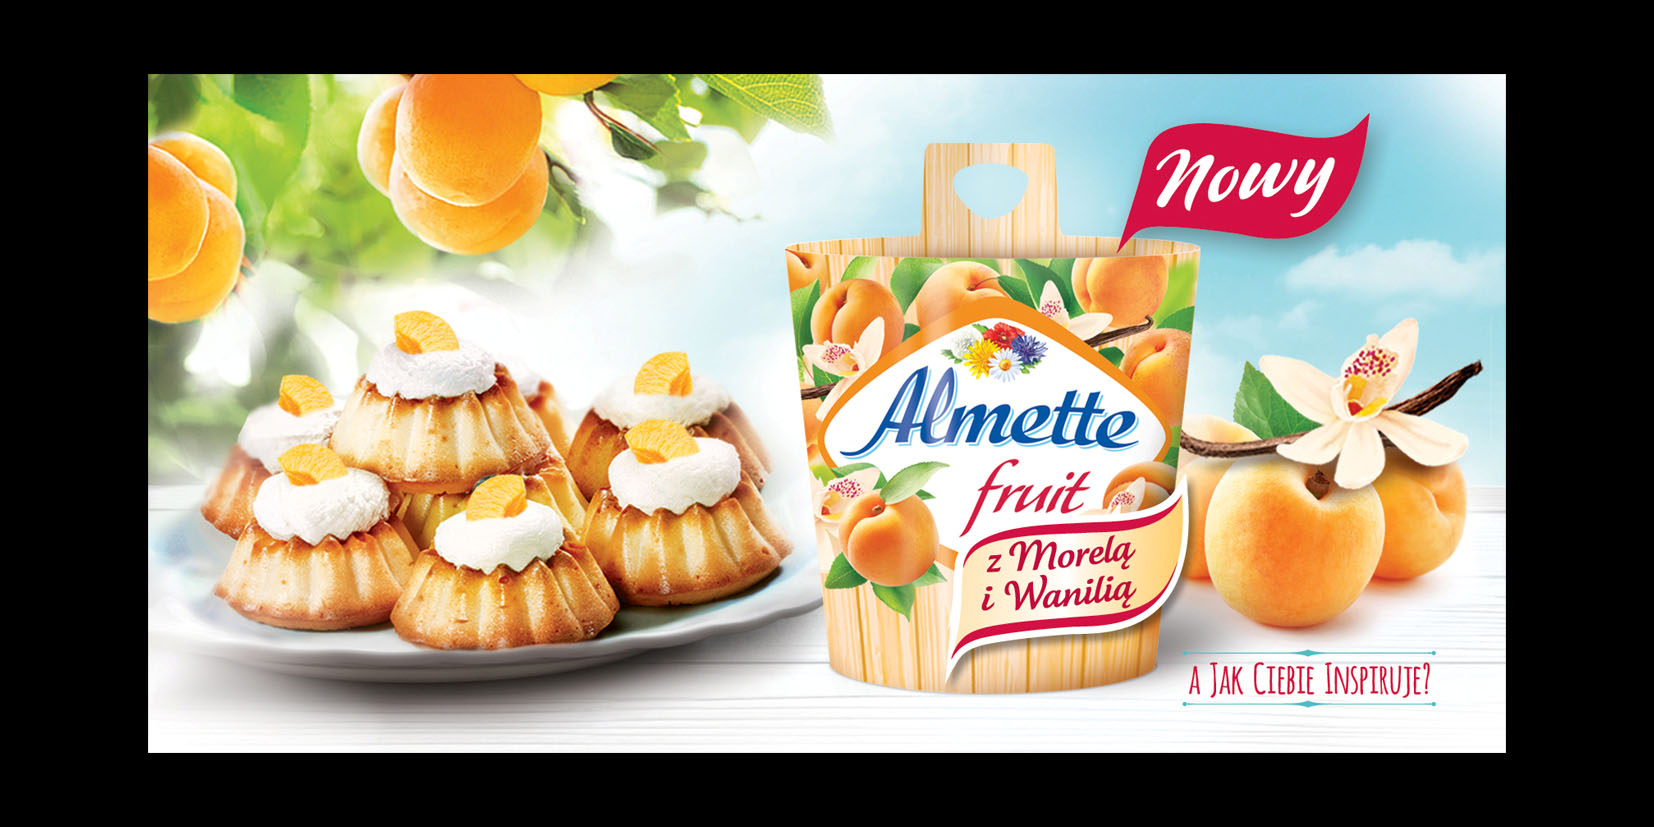 W lutym startuje kampania Almette Fruit!